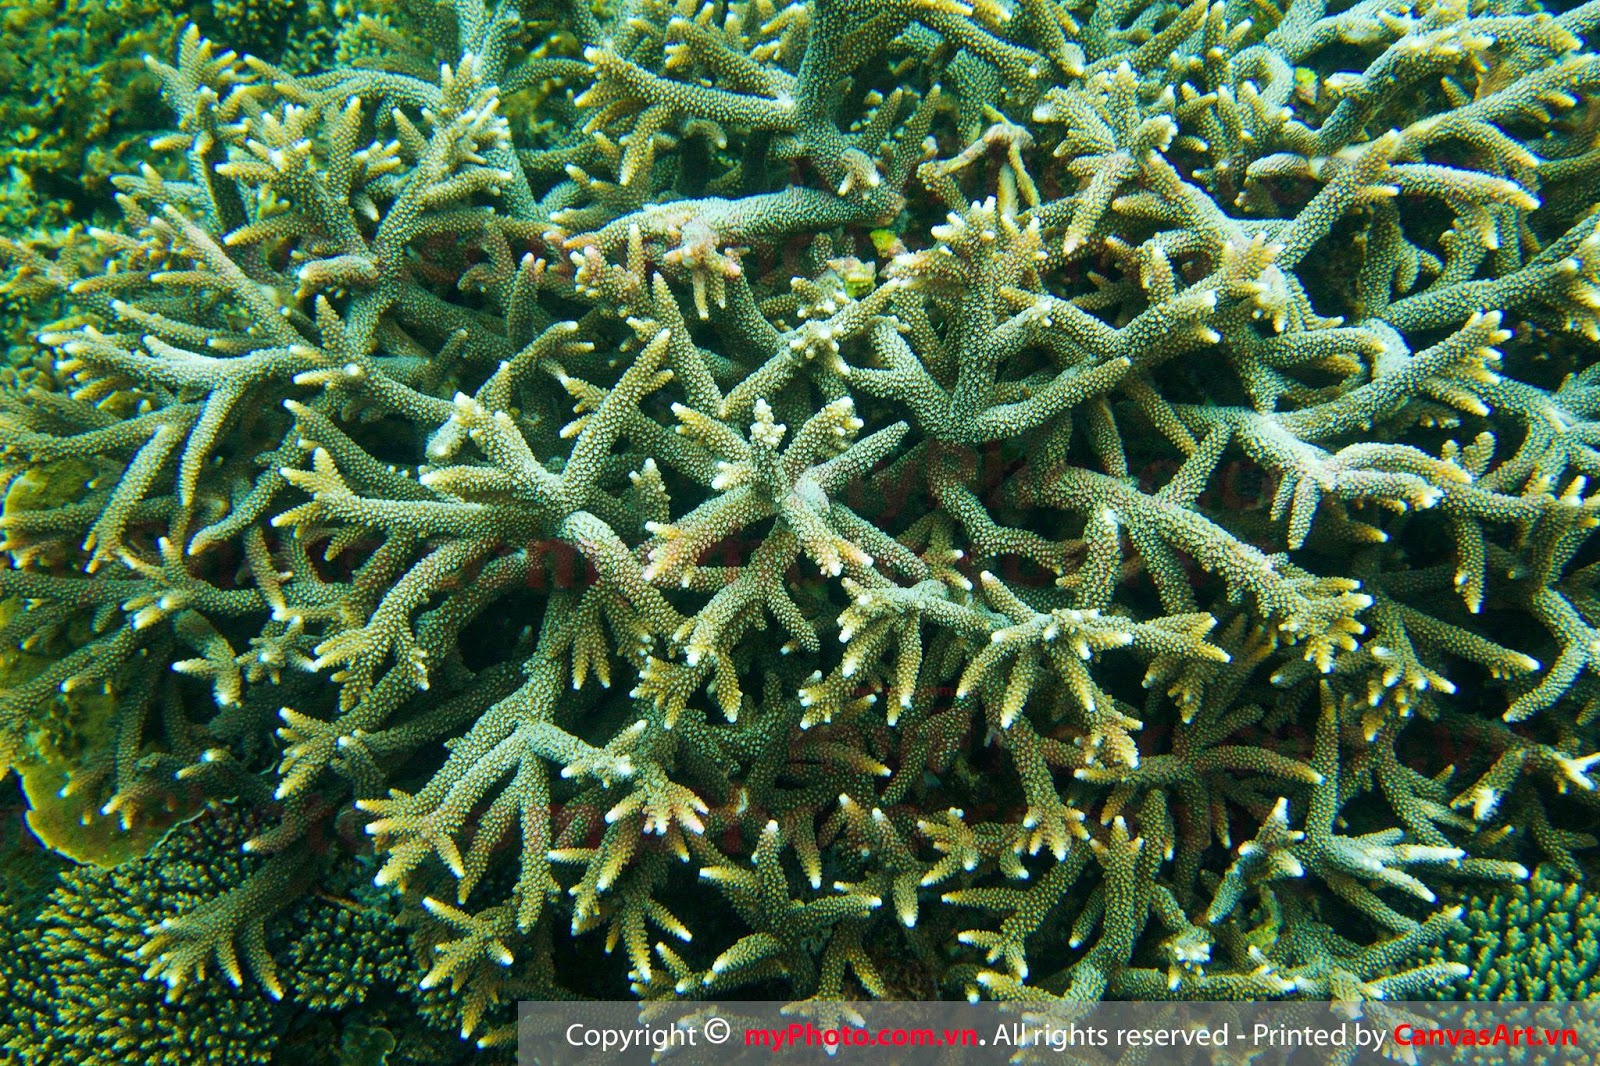 Những hình ảnh san hô đẹp dưới biển được chụp bởi Jimmy Teo ...